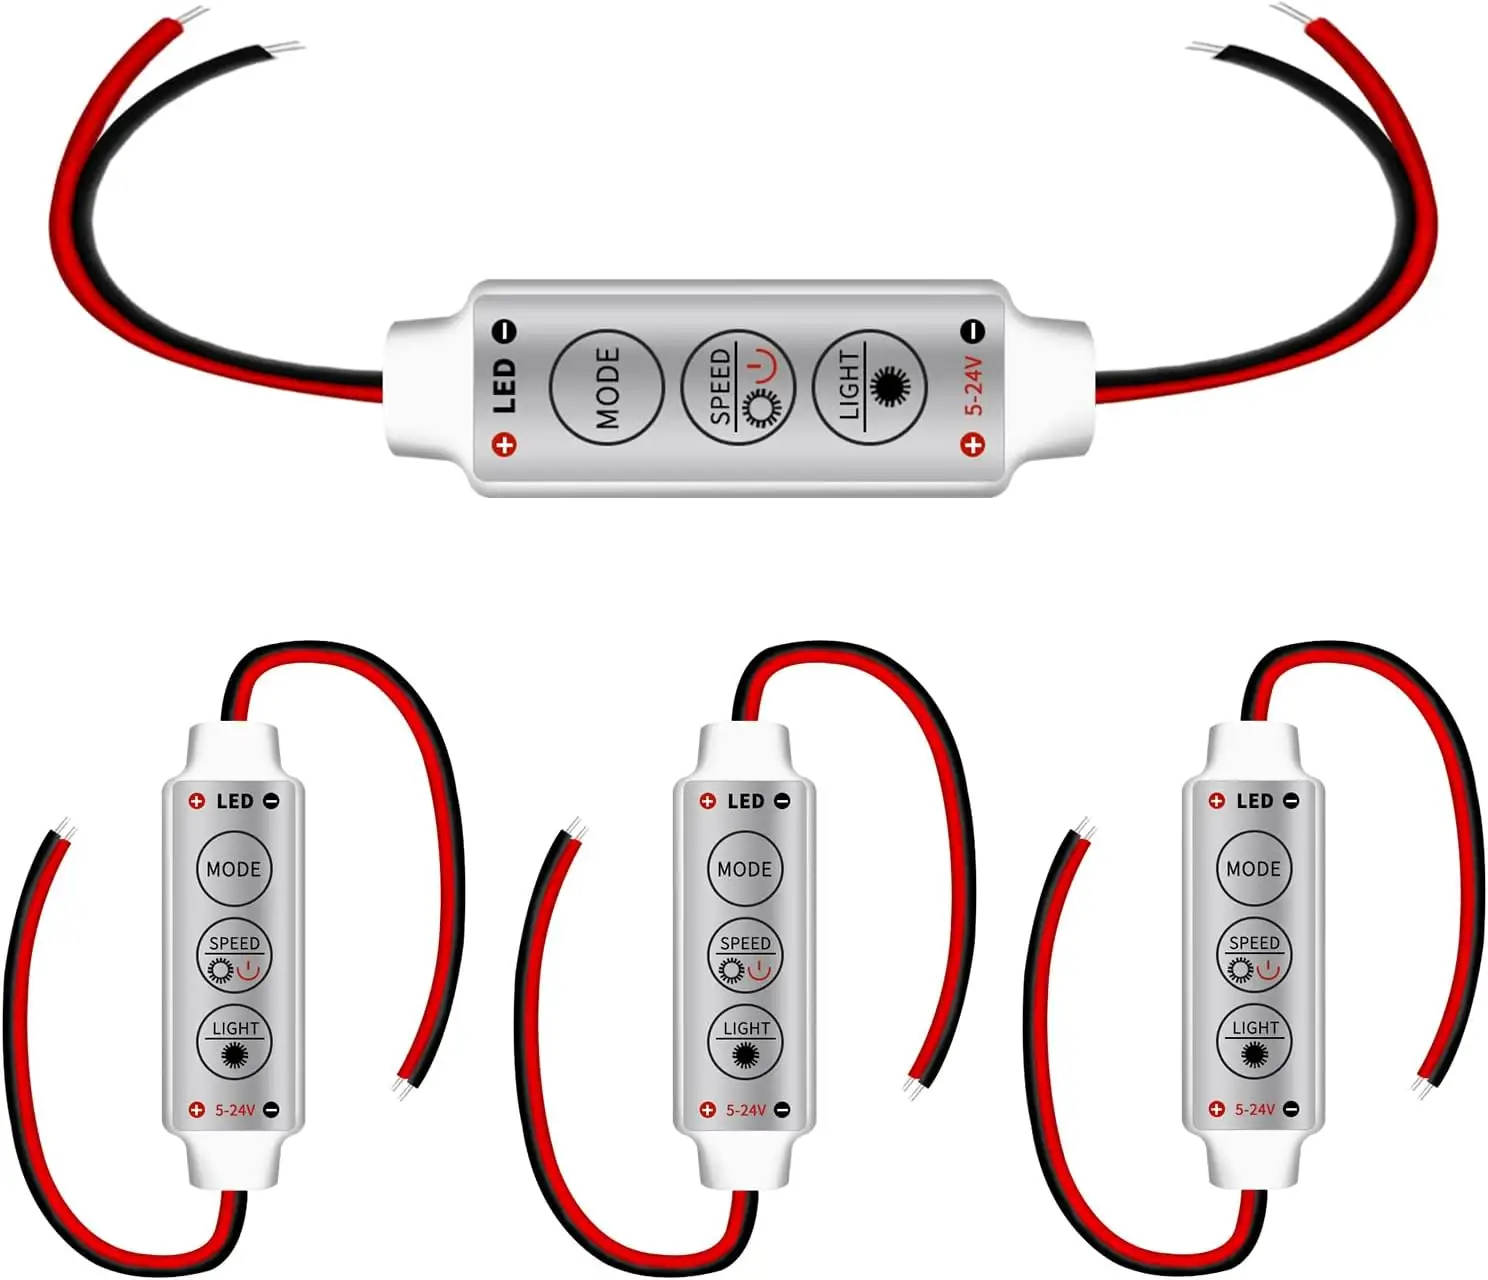 Controlador estroboscópico de flash LED Módulo intermitente de bombilla de tira de luz LED Compatible con coche, barco, hogar DC 5V ~ 24V Función de memoria